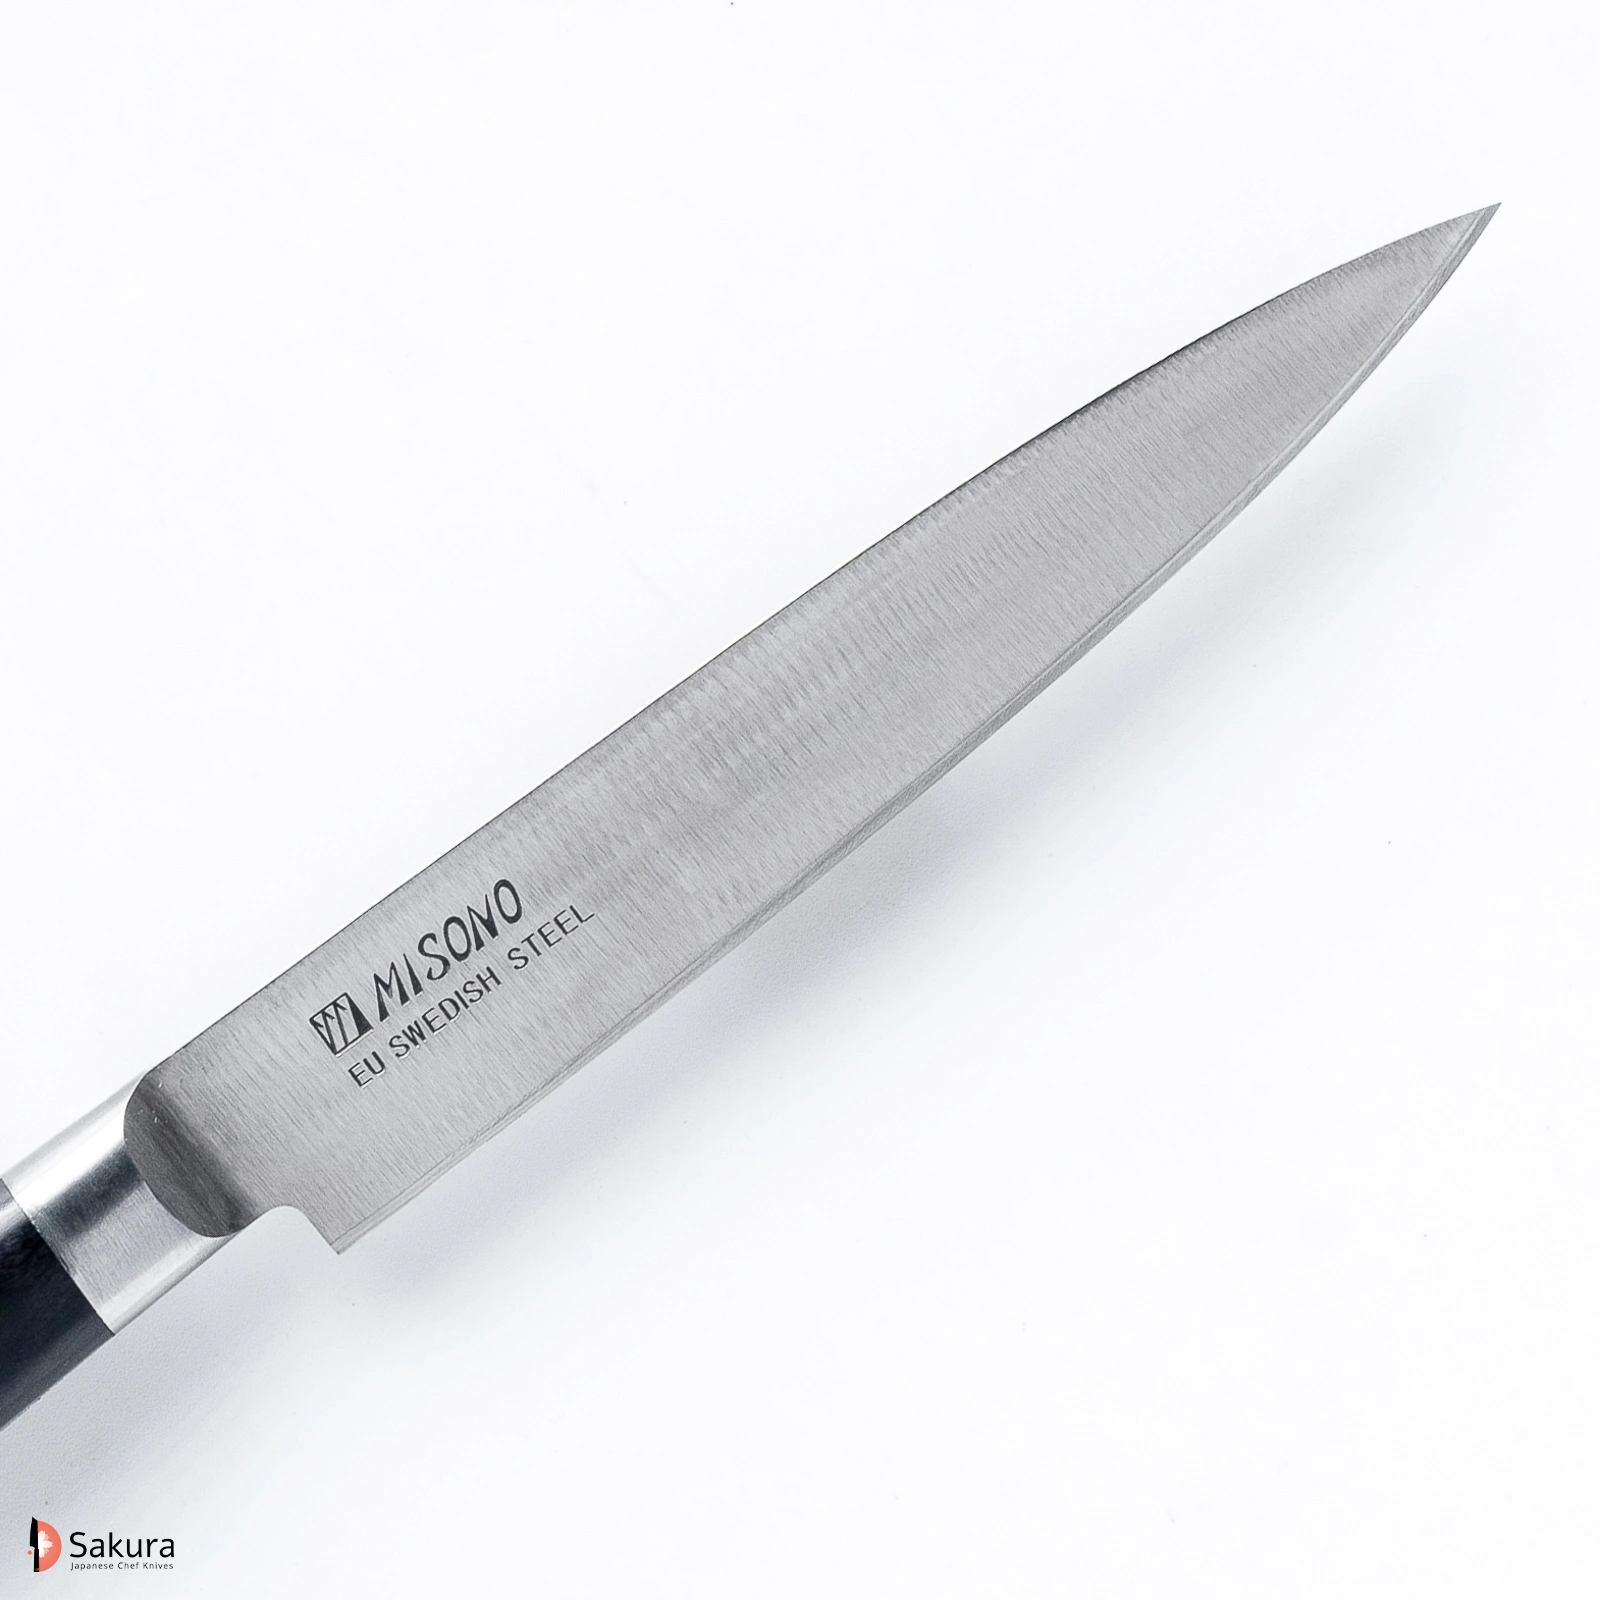 סכין עזר קטנה פטי 120מ״מ פלדת EU Carbon גימור מט מלוטש מיסונו יפן מק״ט SKMISMSO1302349